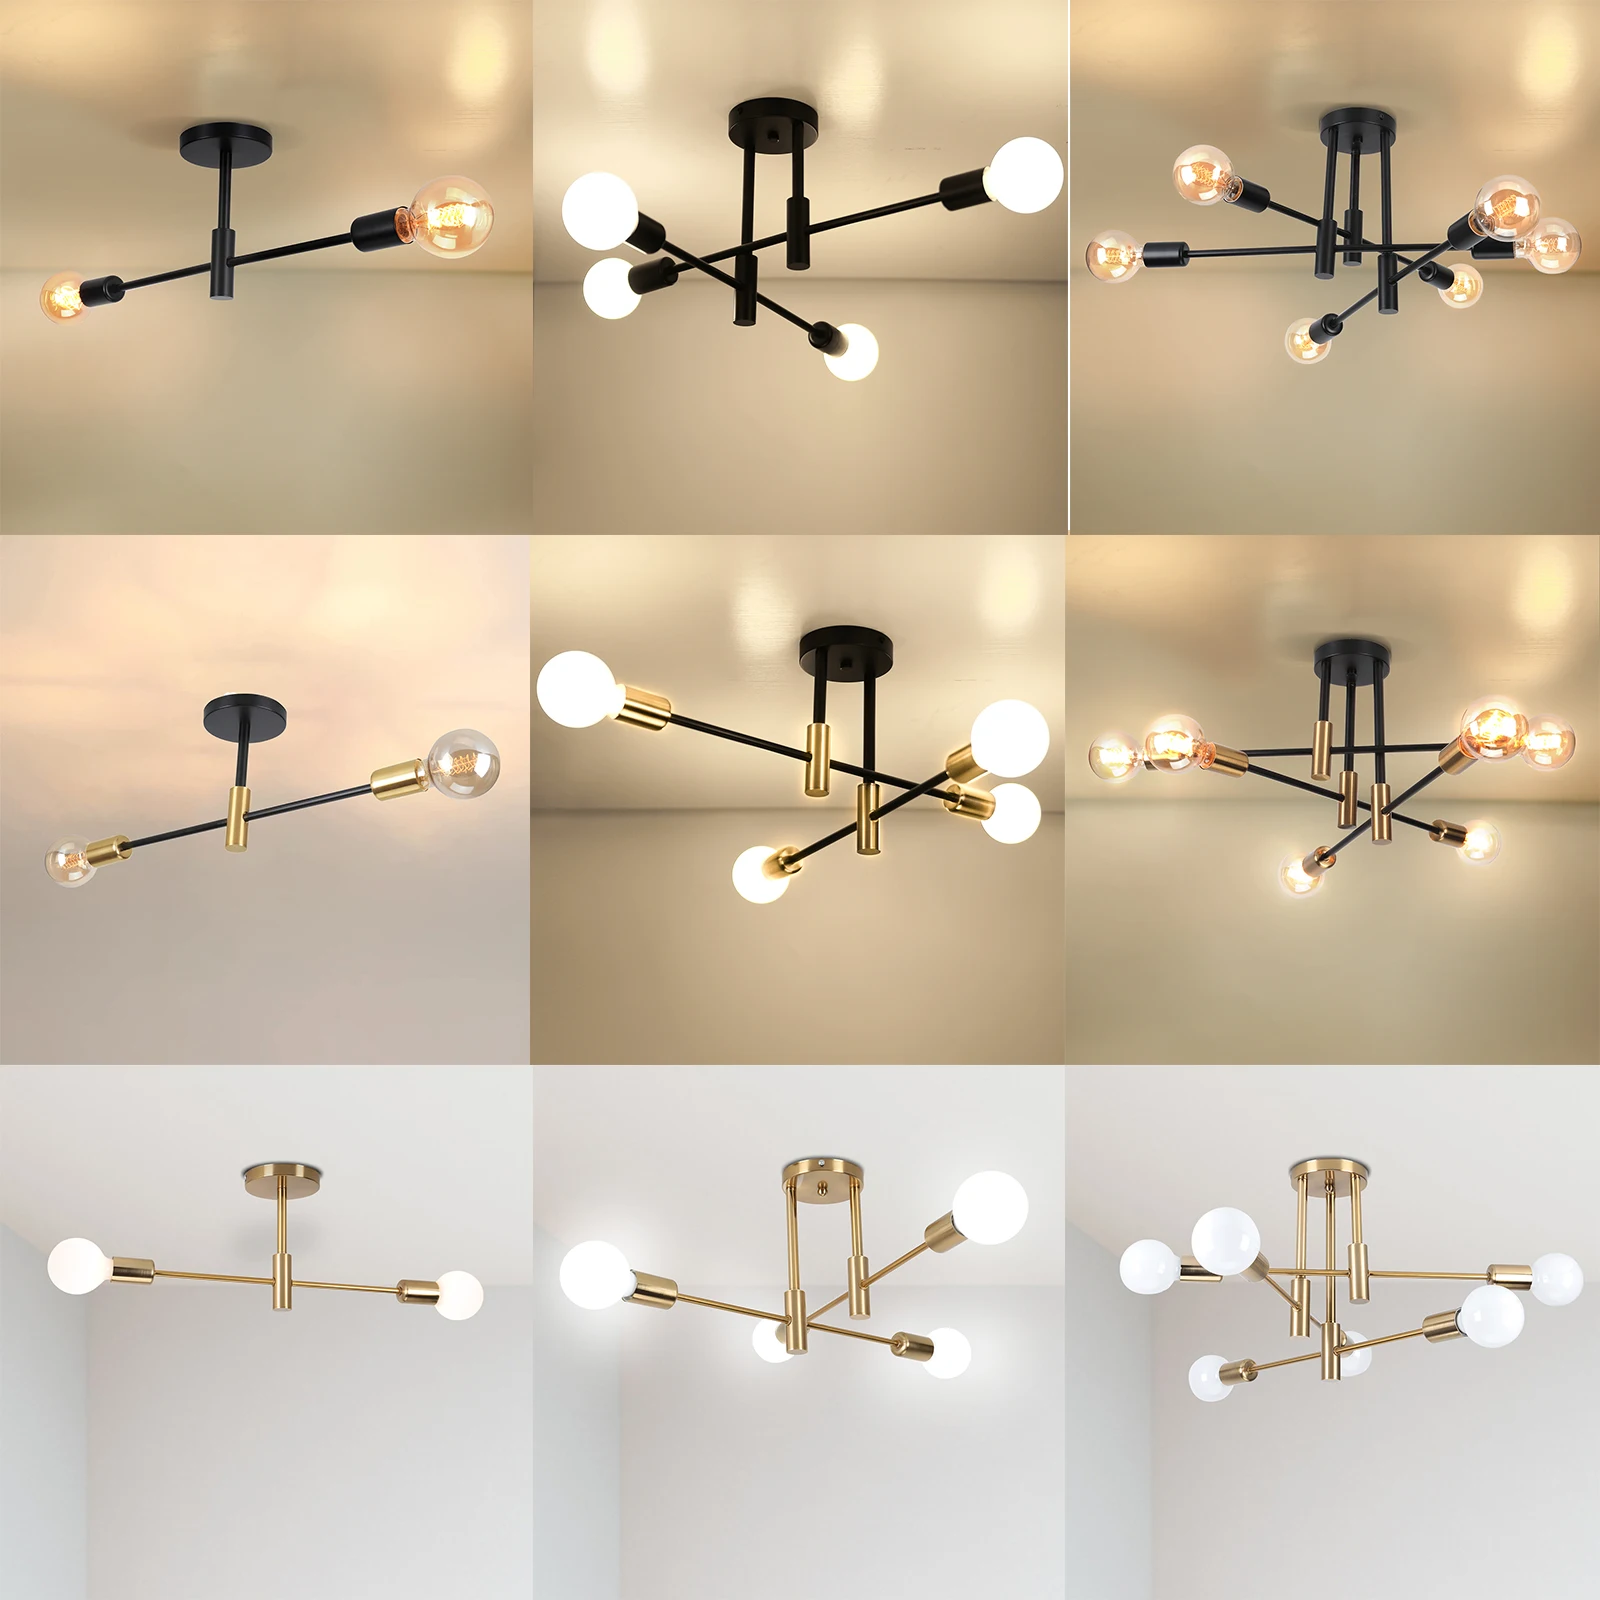 Ndeliers indoor lighting fixtures for bedroom living room cloakroom lampara nordic home thumb200